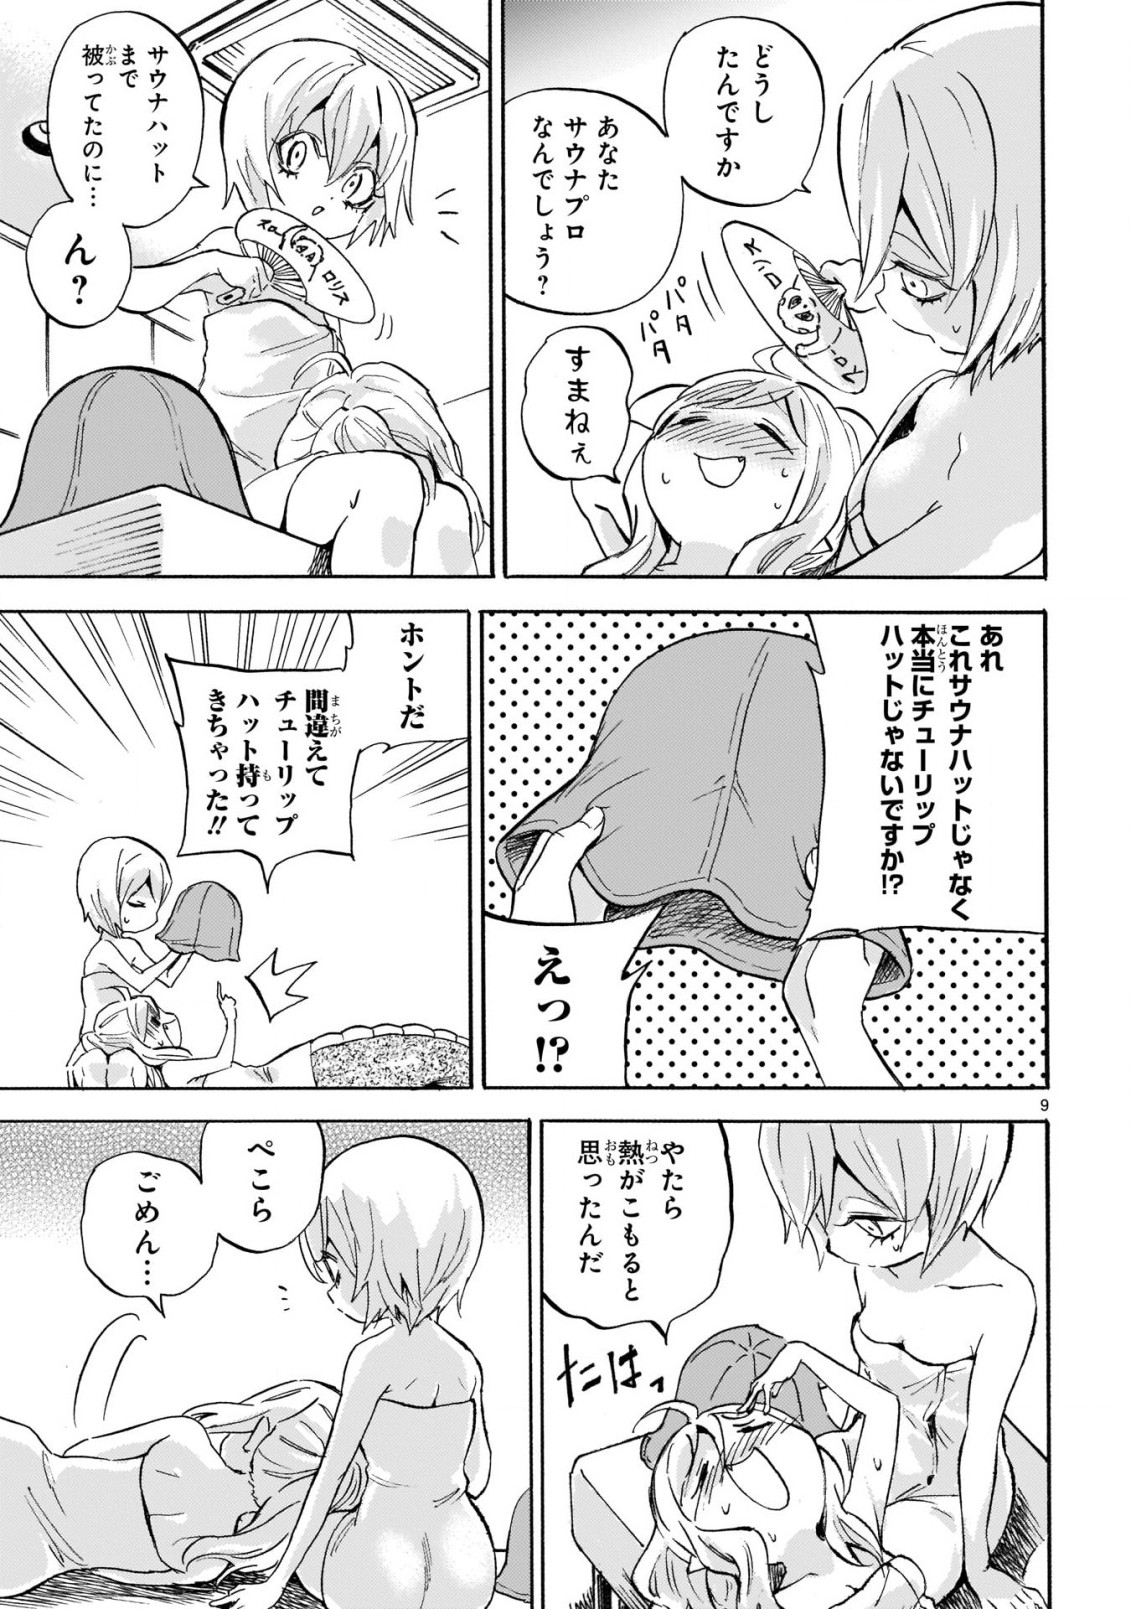 Jashin-chan Dropkick - Chapter 222 - Page 9